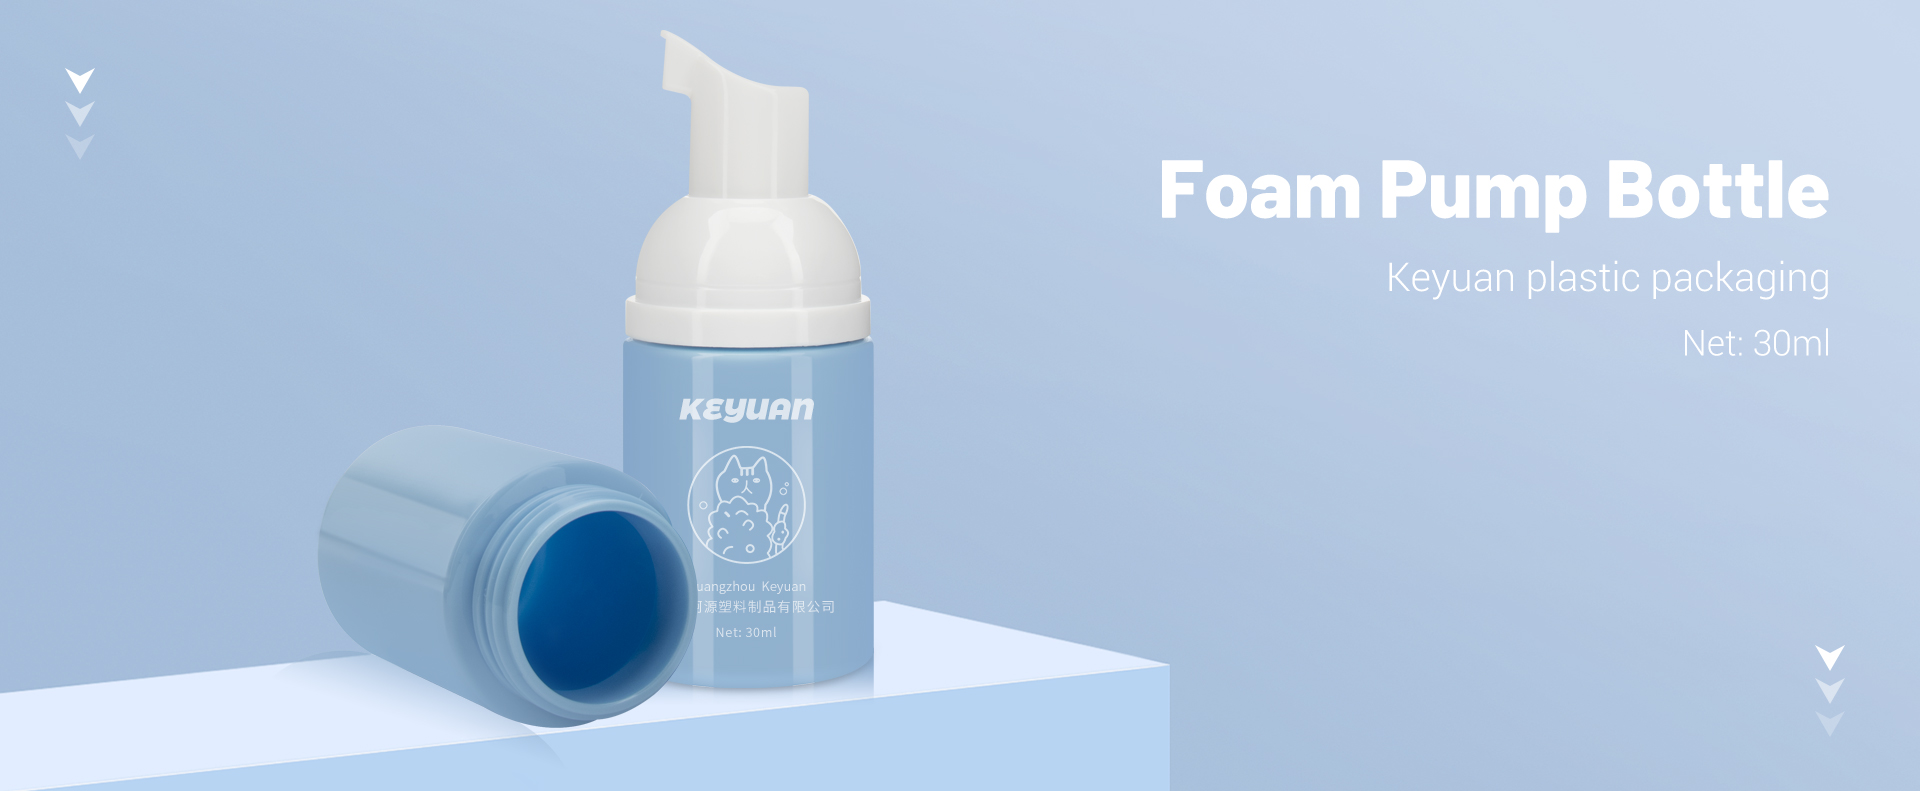 KY126 Mini Foaming Face Cleanser Plastic Bottles 30ml 1oz PET with Foam Pumps